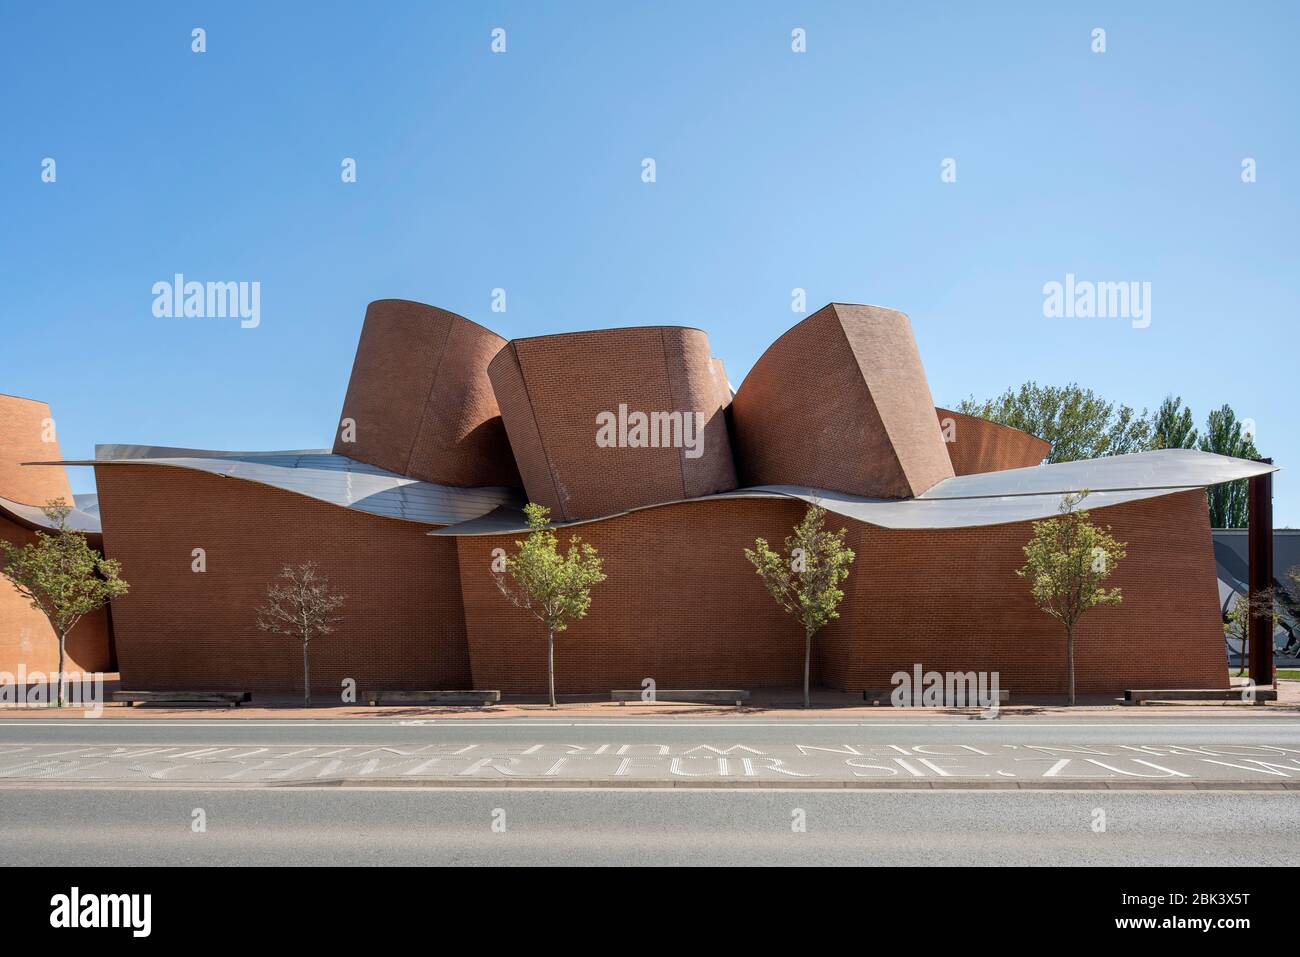 Herford, Musée für zeitgenössische Kunst, 2005 von Frank Gehry erbaut Banque D'Images